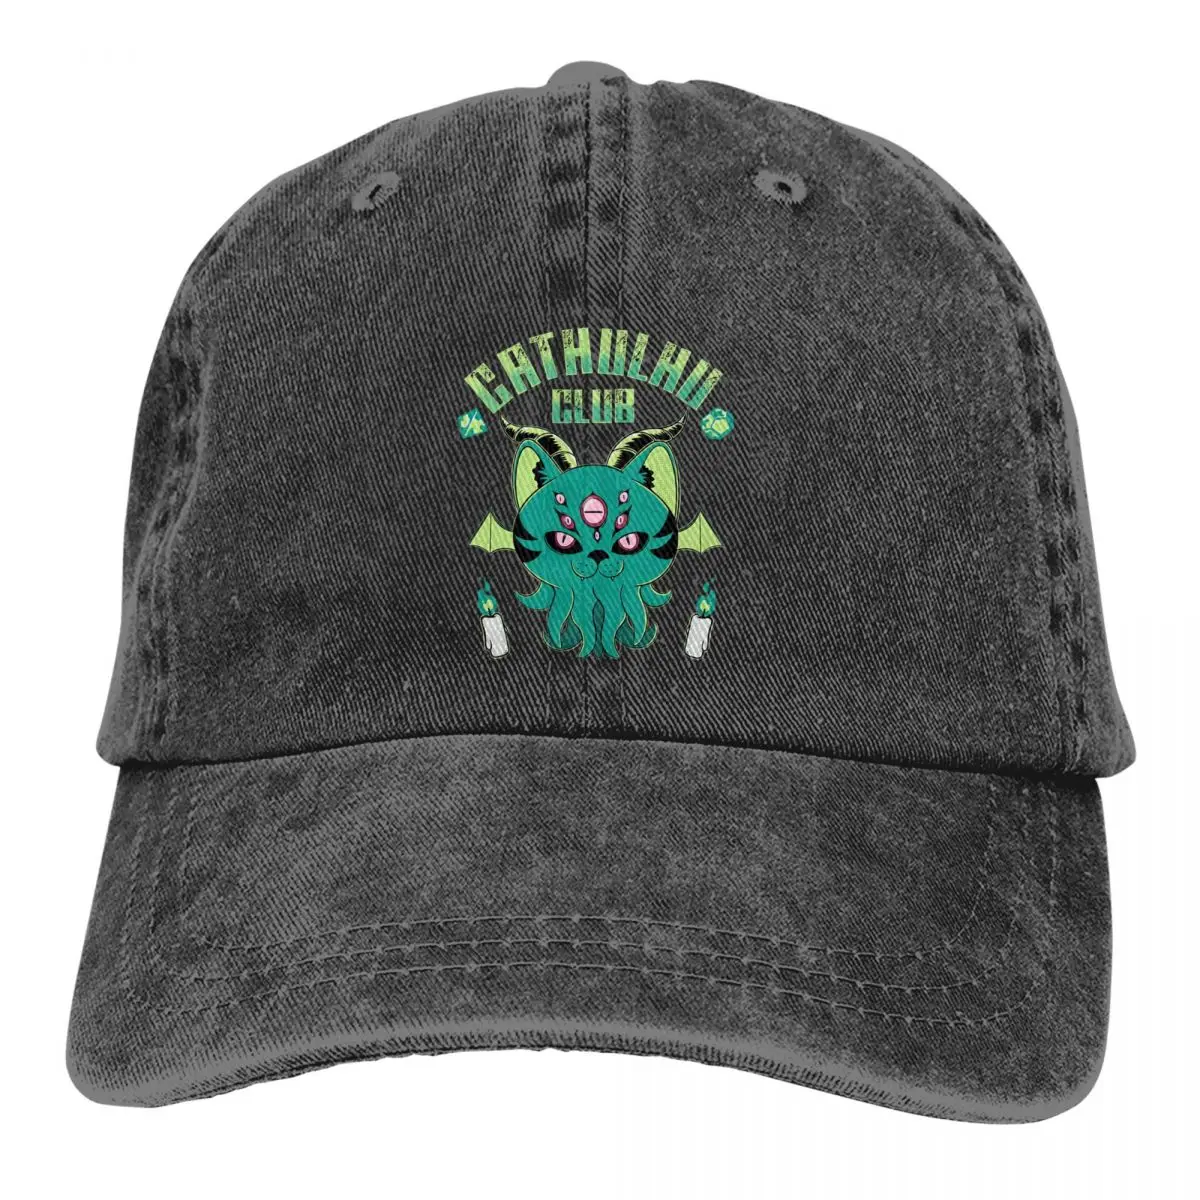 

Летняя кепка, солнцезащитный козырек, кепки Cathulhu Club в стиле хип-хоп, созданы Говардом Phillips, ковбойская шляпа Lovecraft, остроконечные кепки